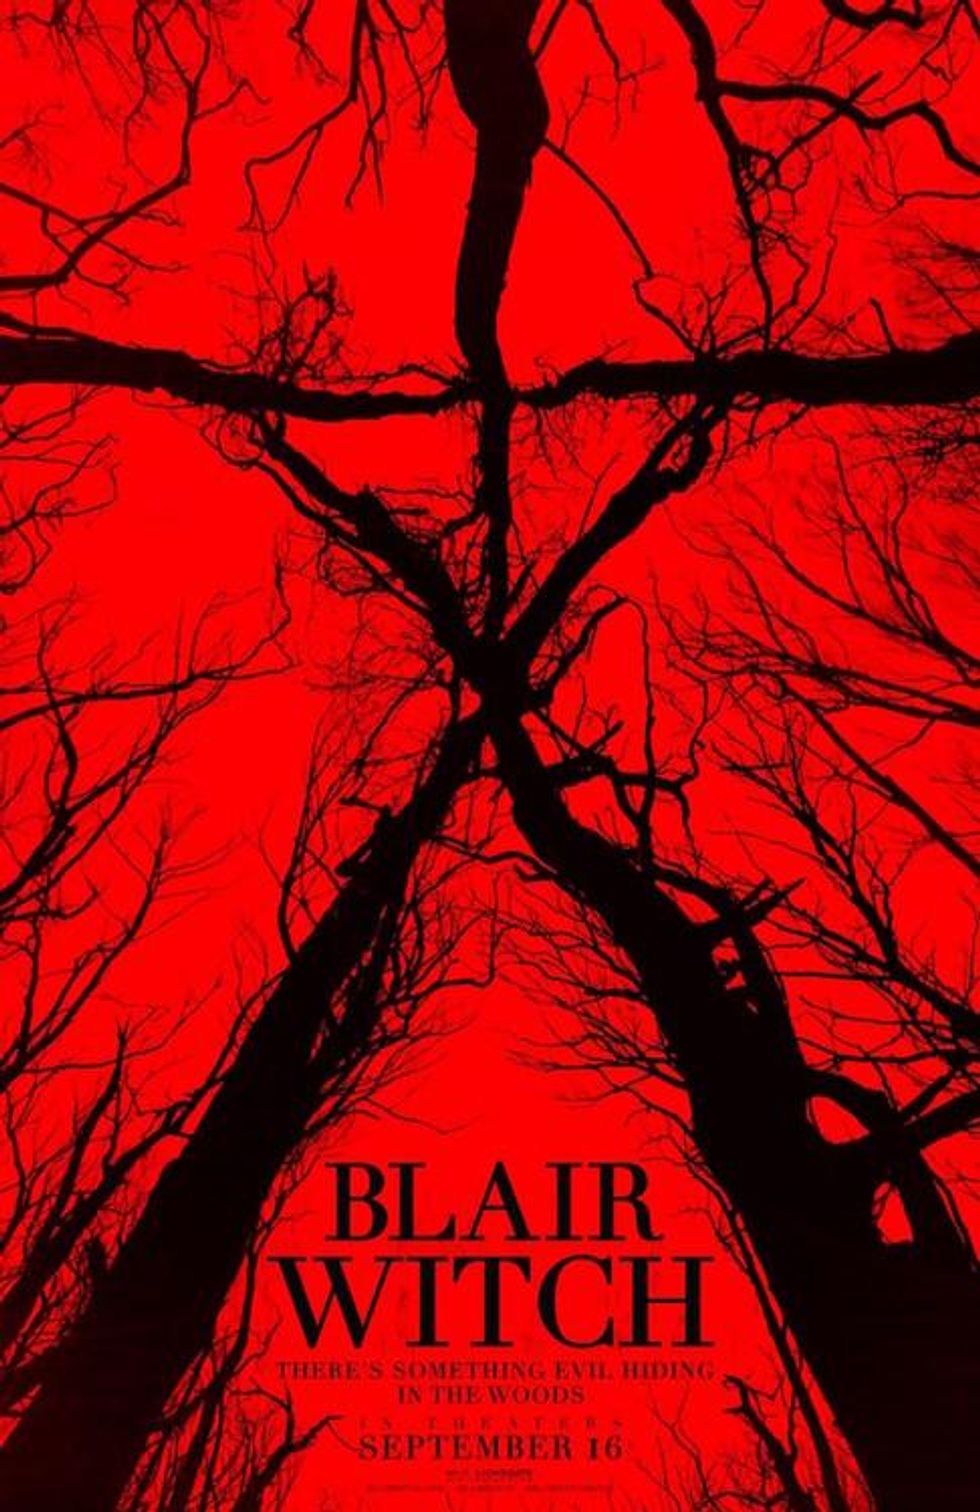 Top Secret 'Blair Witch' Sequel Premieres